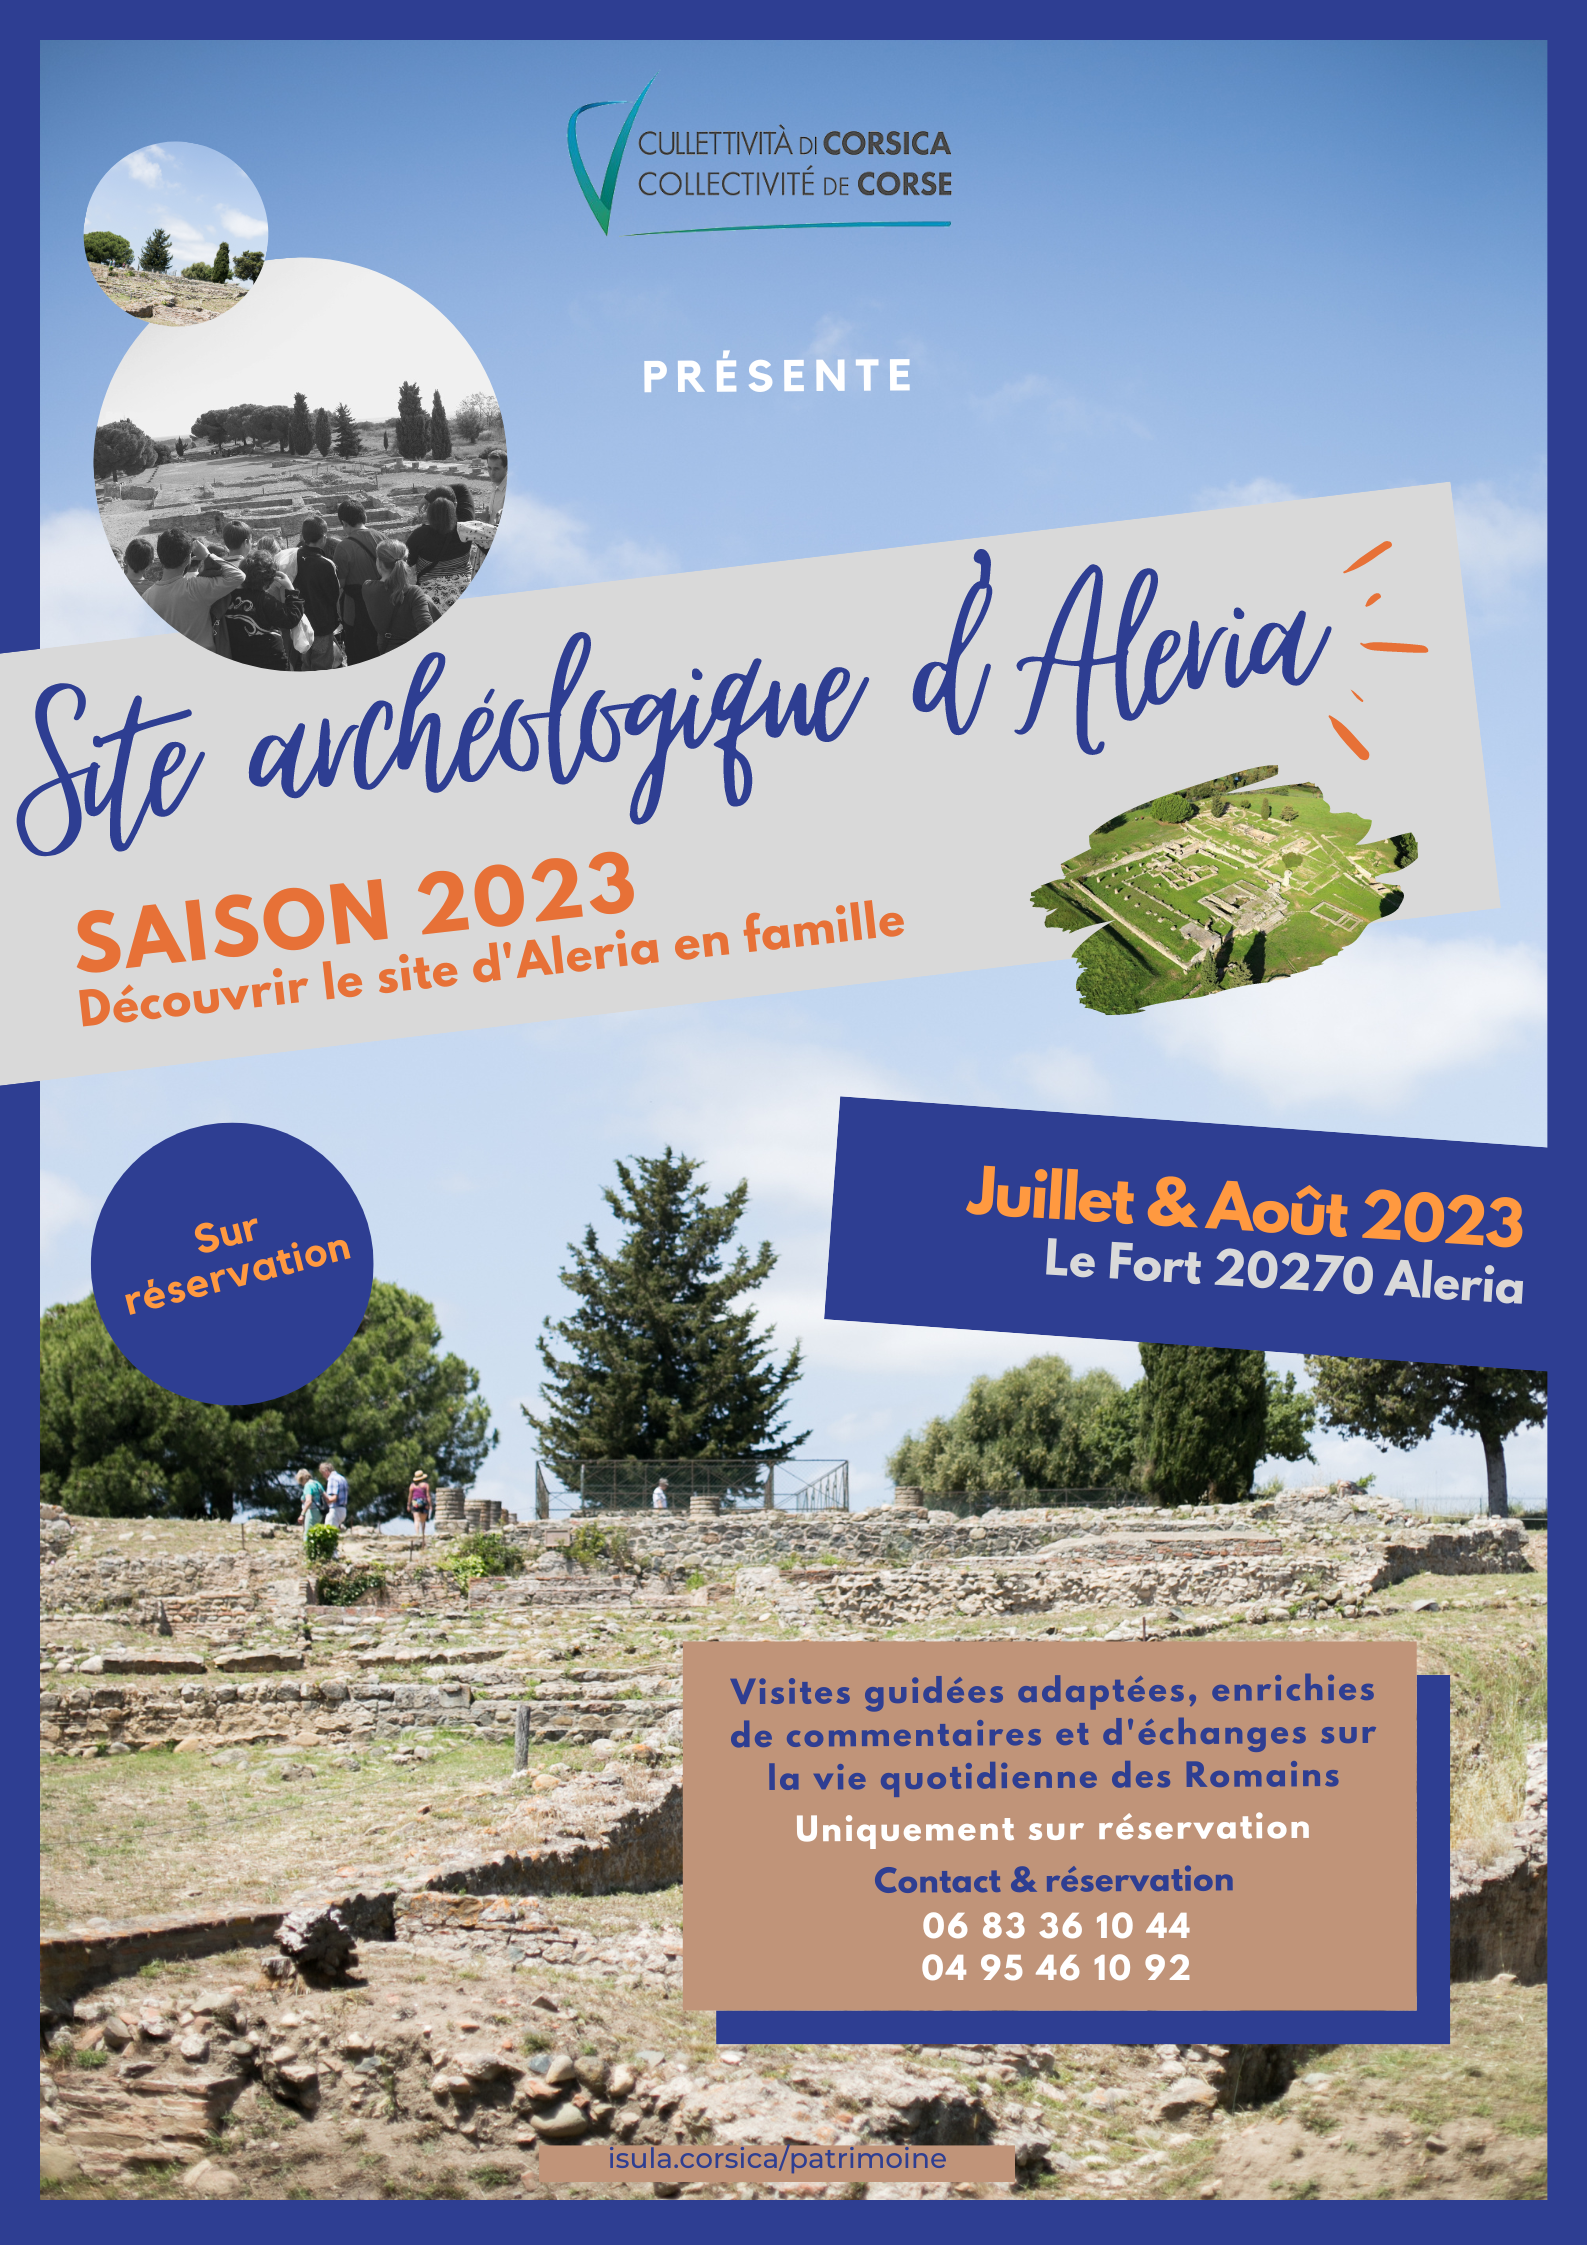 Découvrir le site antique d'Aleria en famille  | Saison 2022